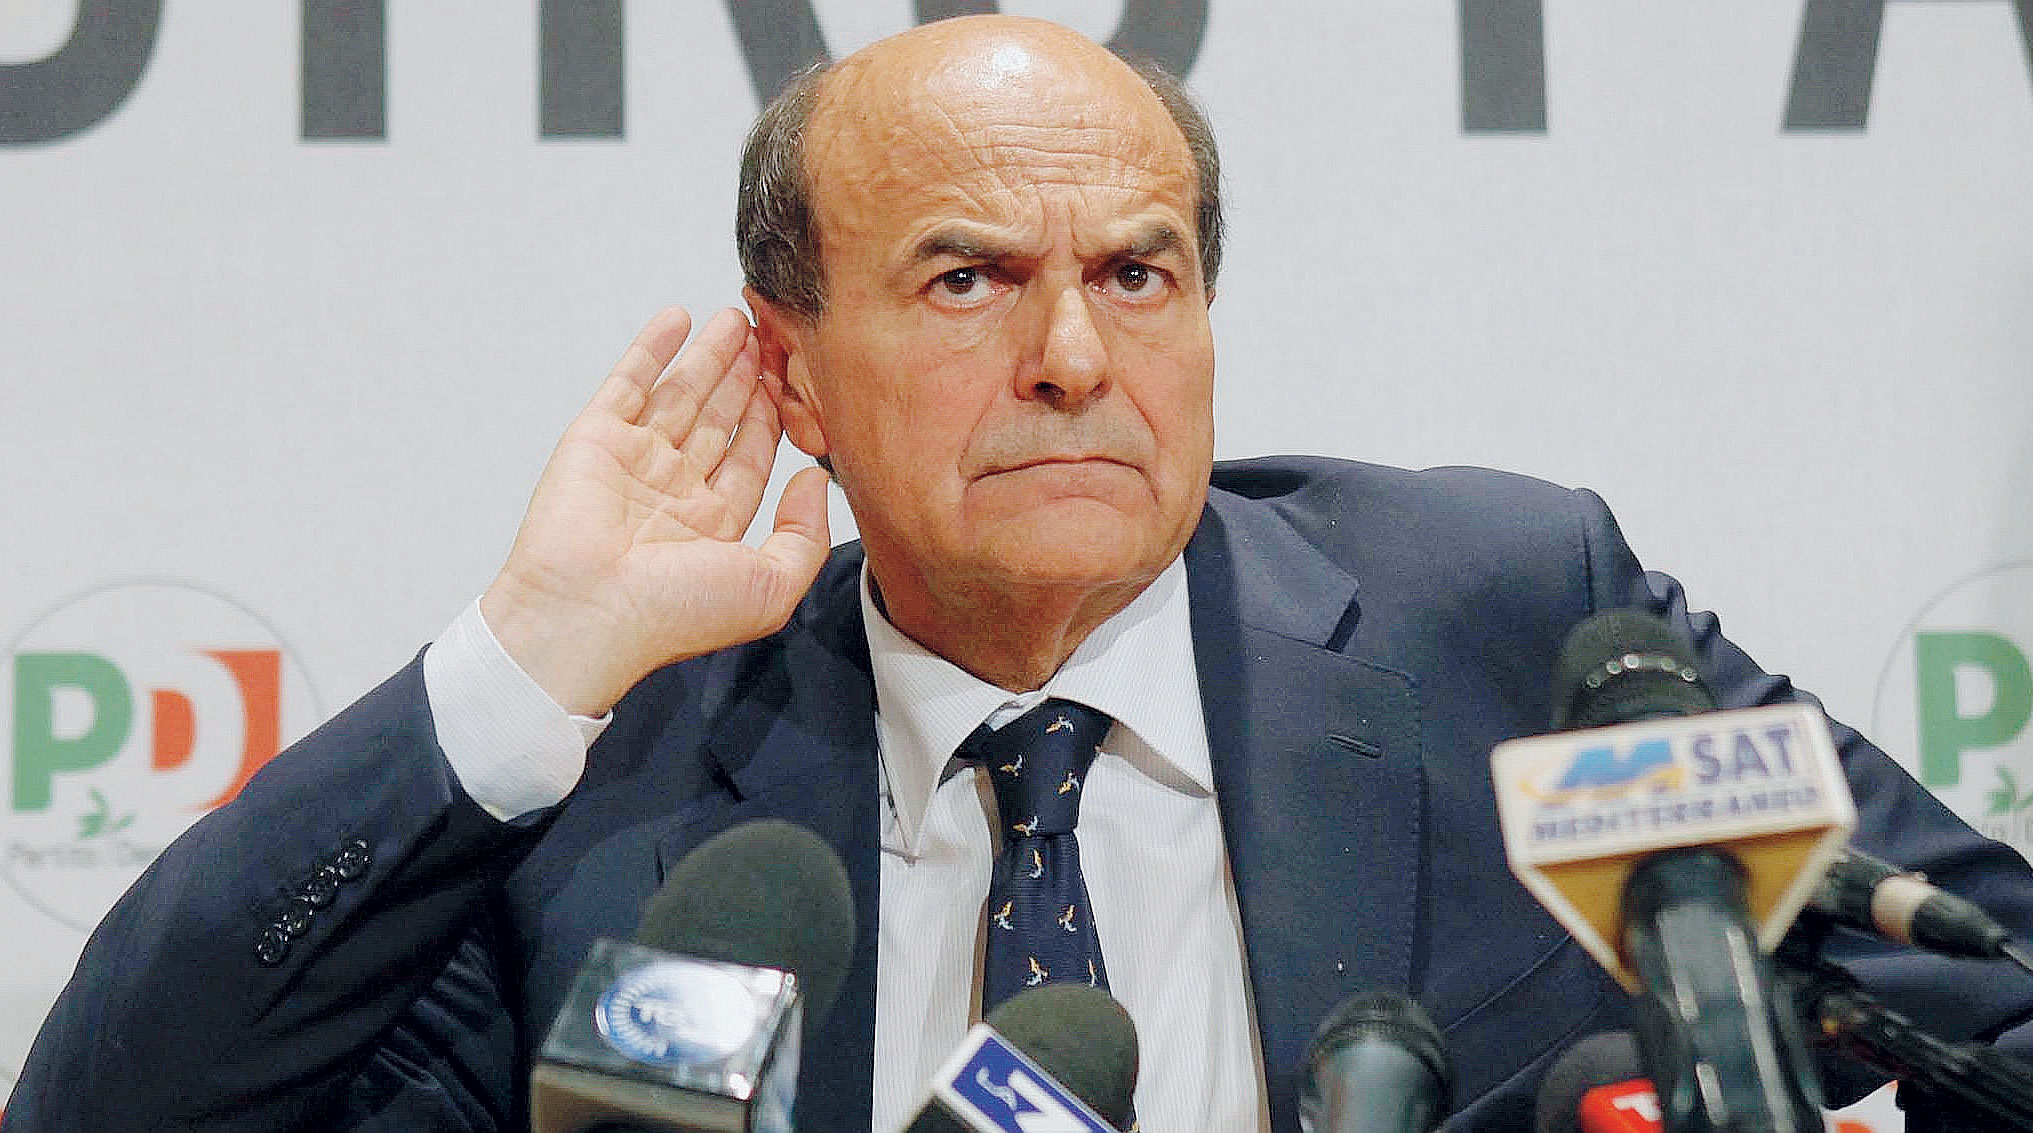 Bersani: "Parlare con i 5 stelle è un dovere, fare una alleanza di governo è tutto un altro film"